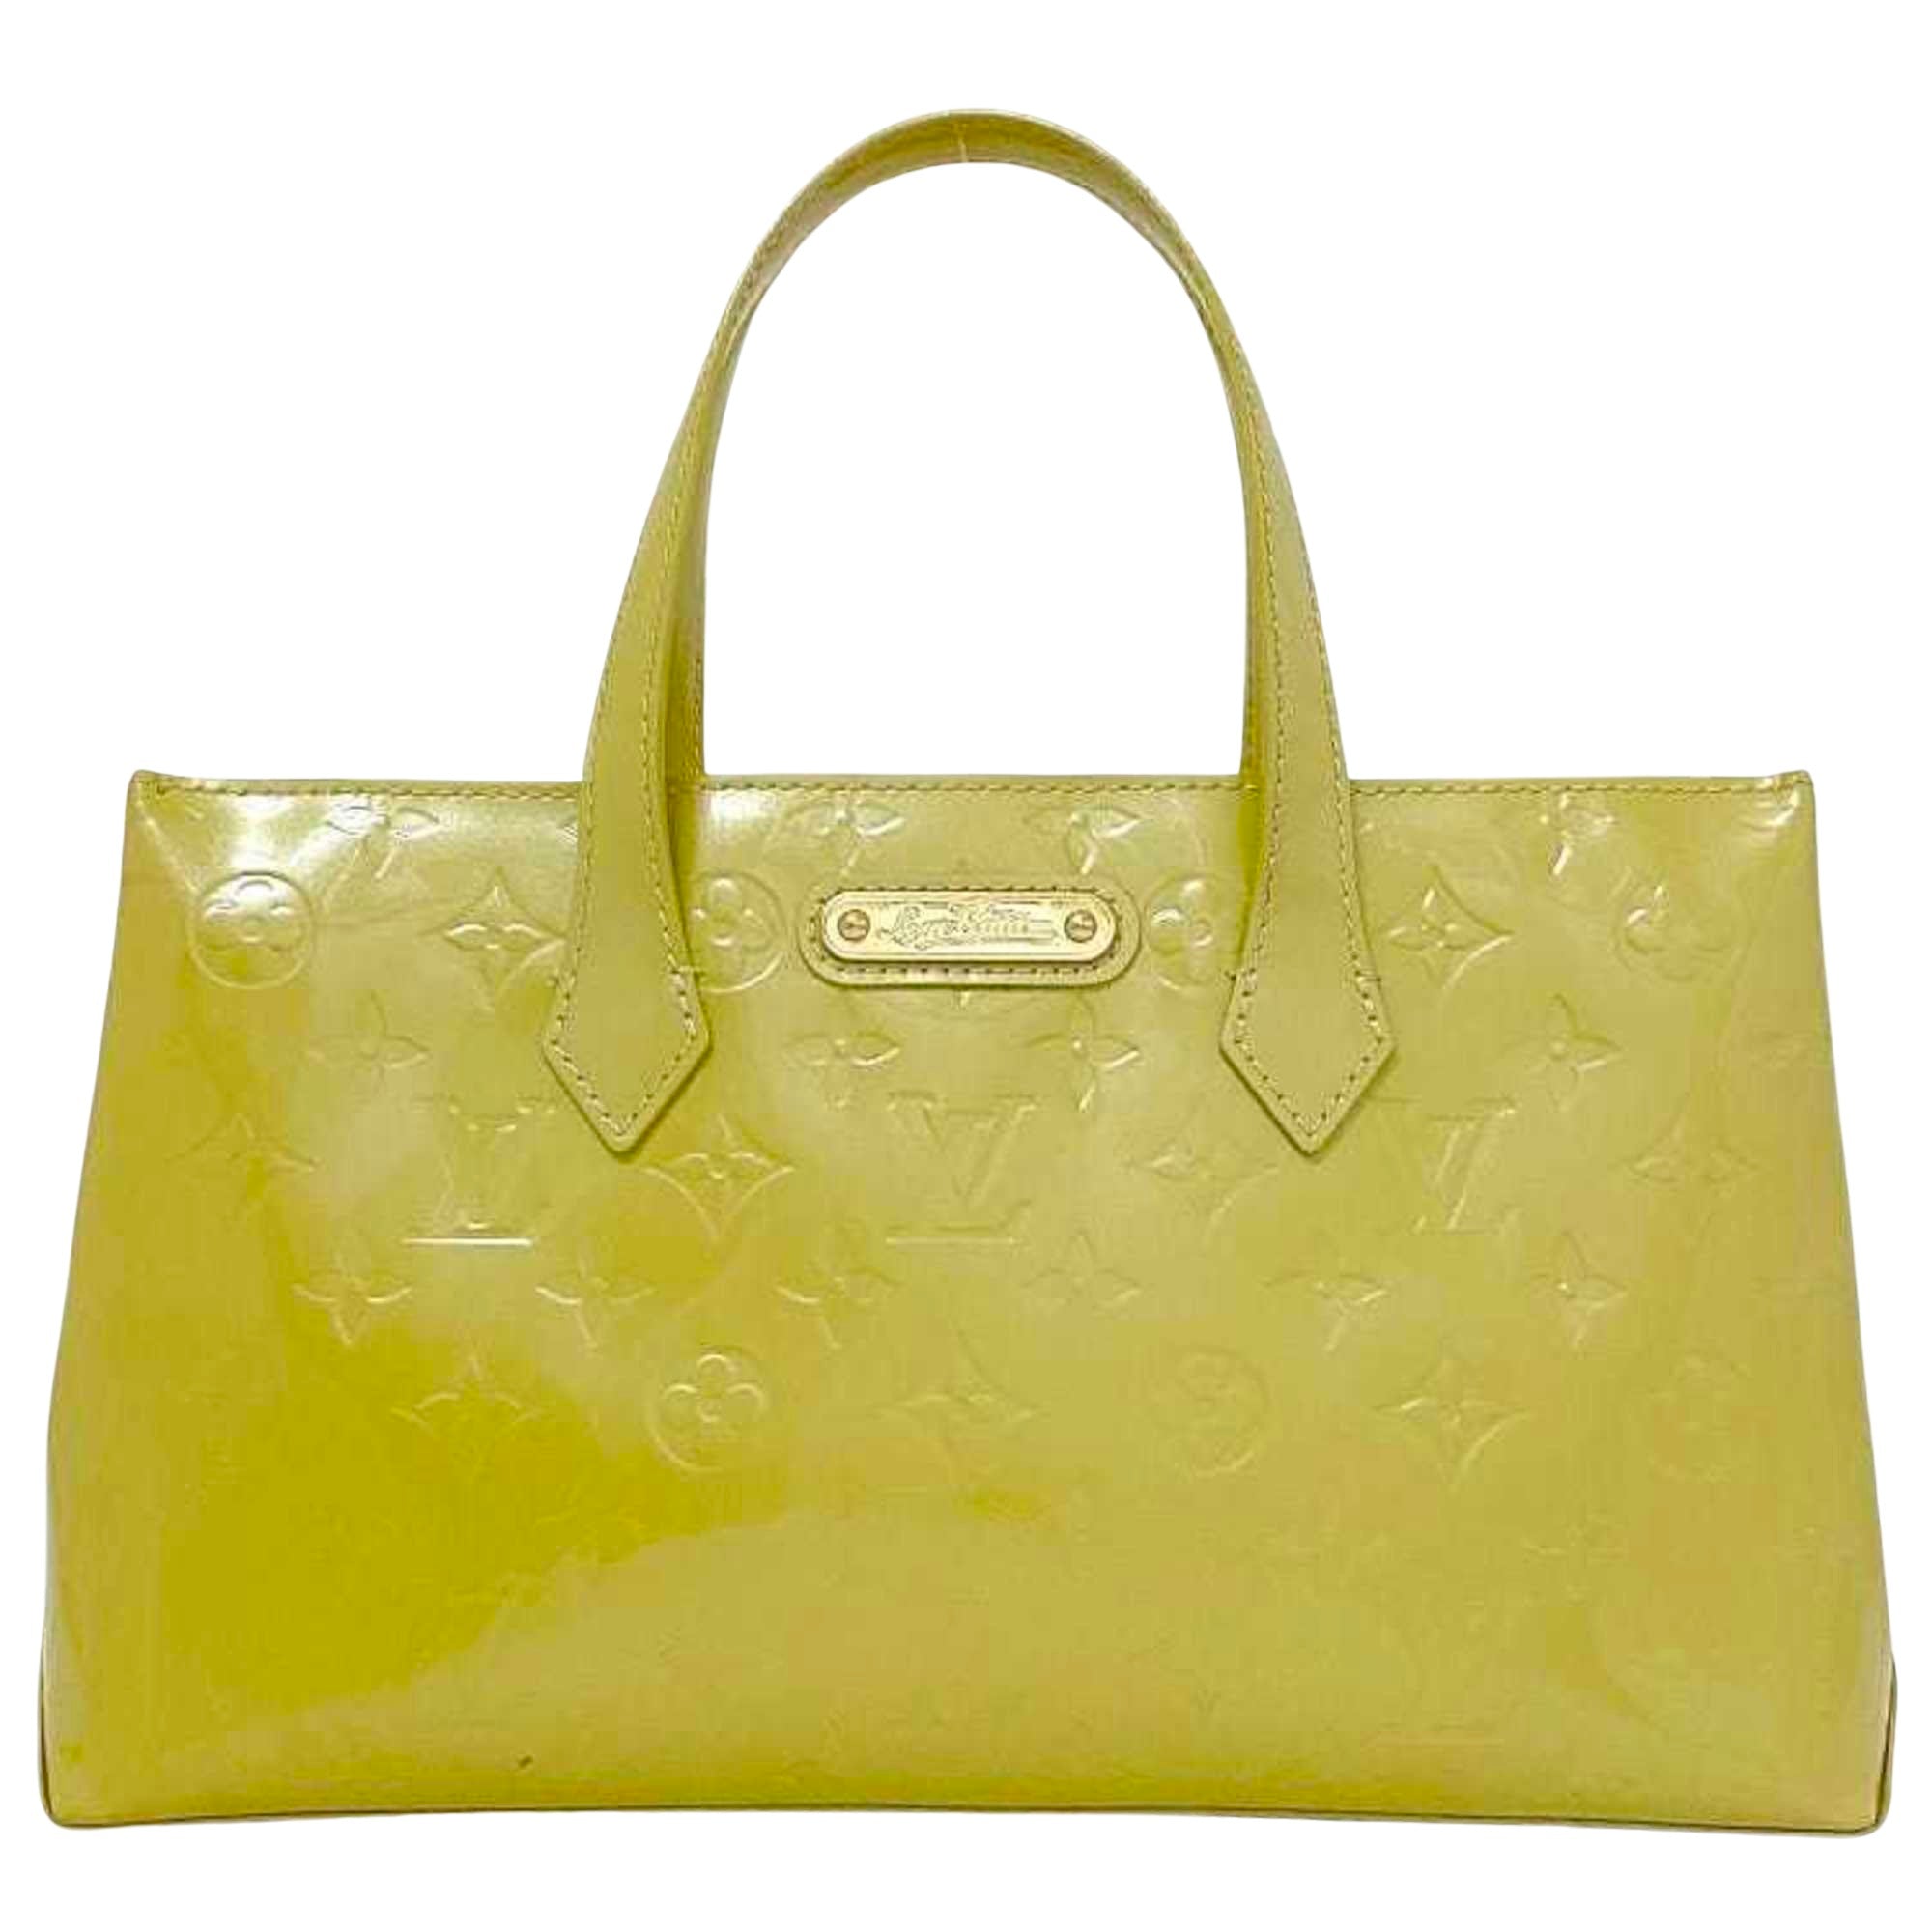 Louis Vuitton Wilshire Patent Leather Handbag